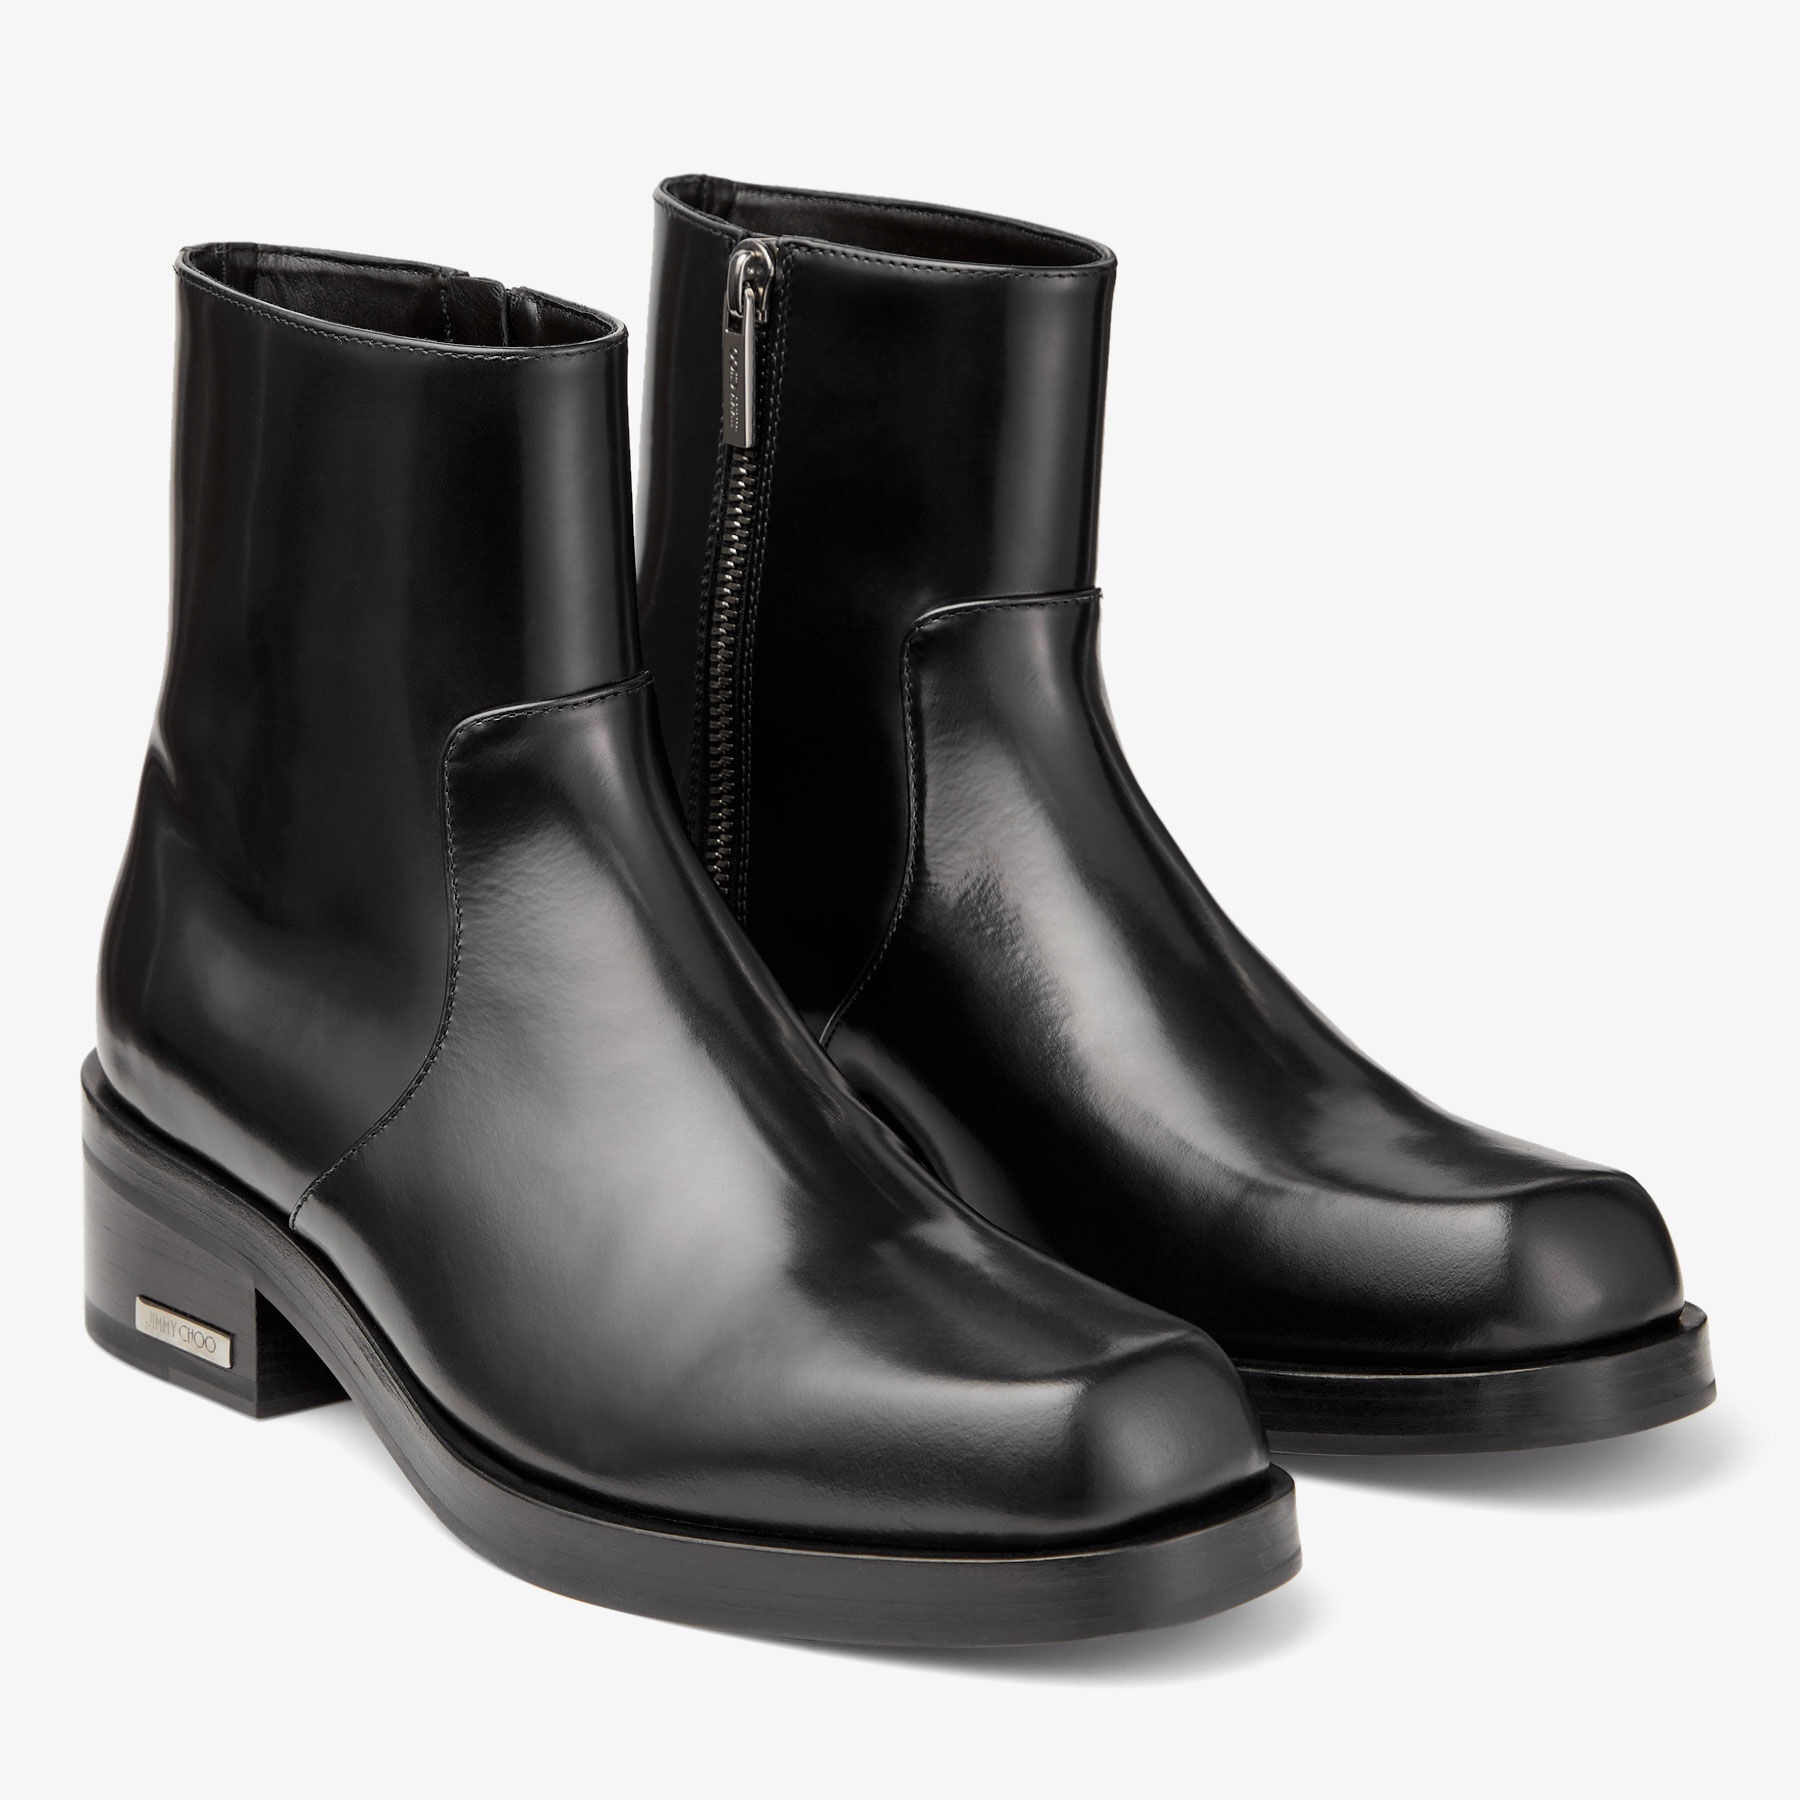 Elias Zip Boot
Black Calf Leather Zip Boots - 2